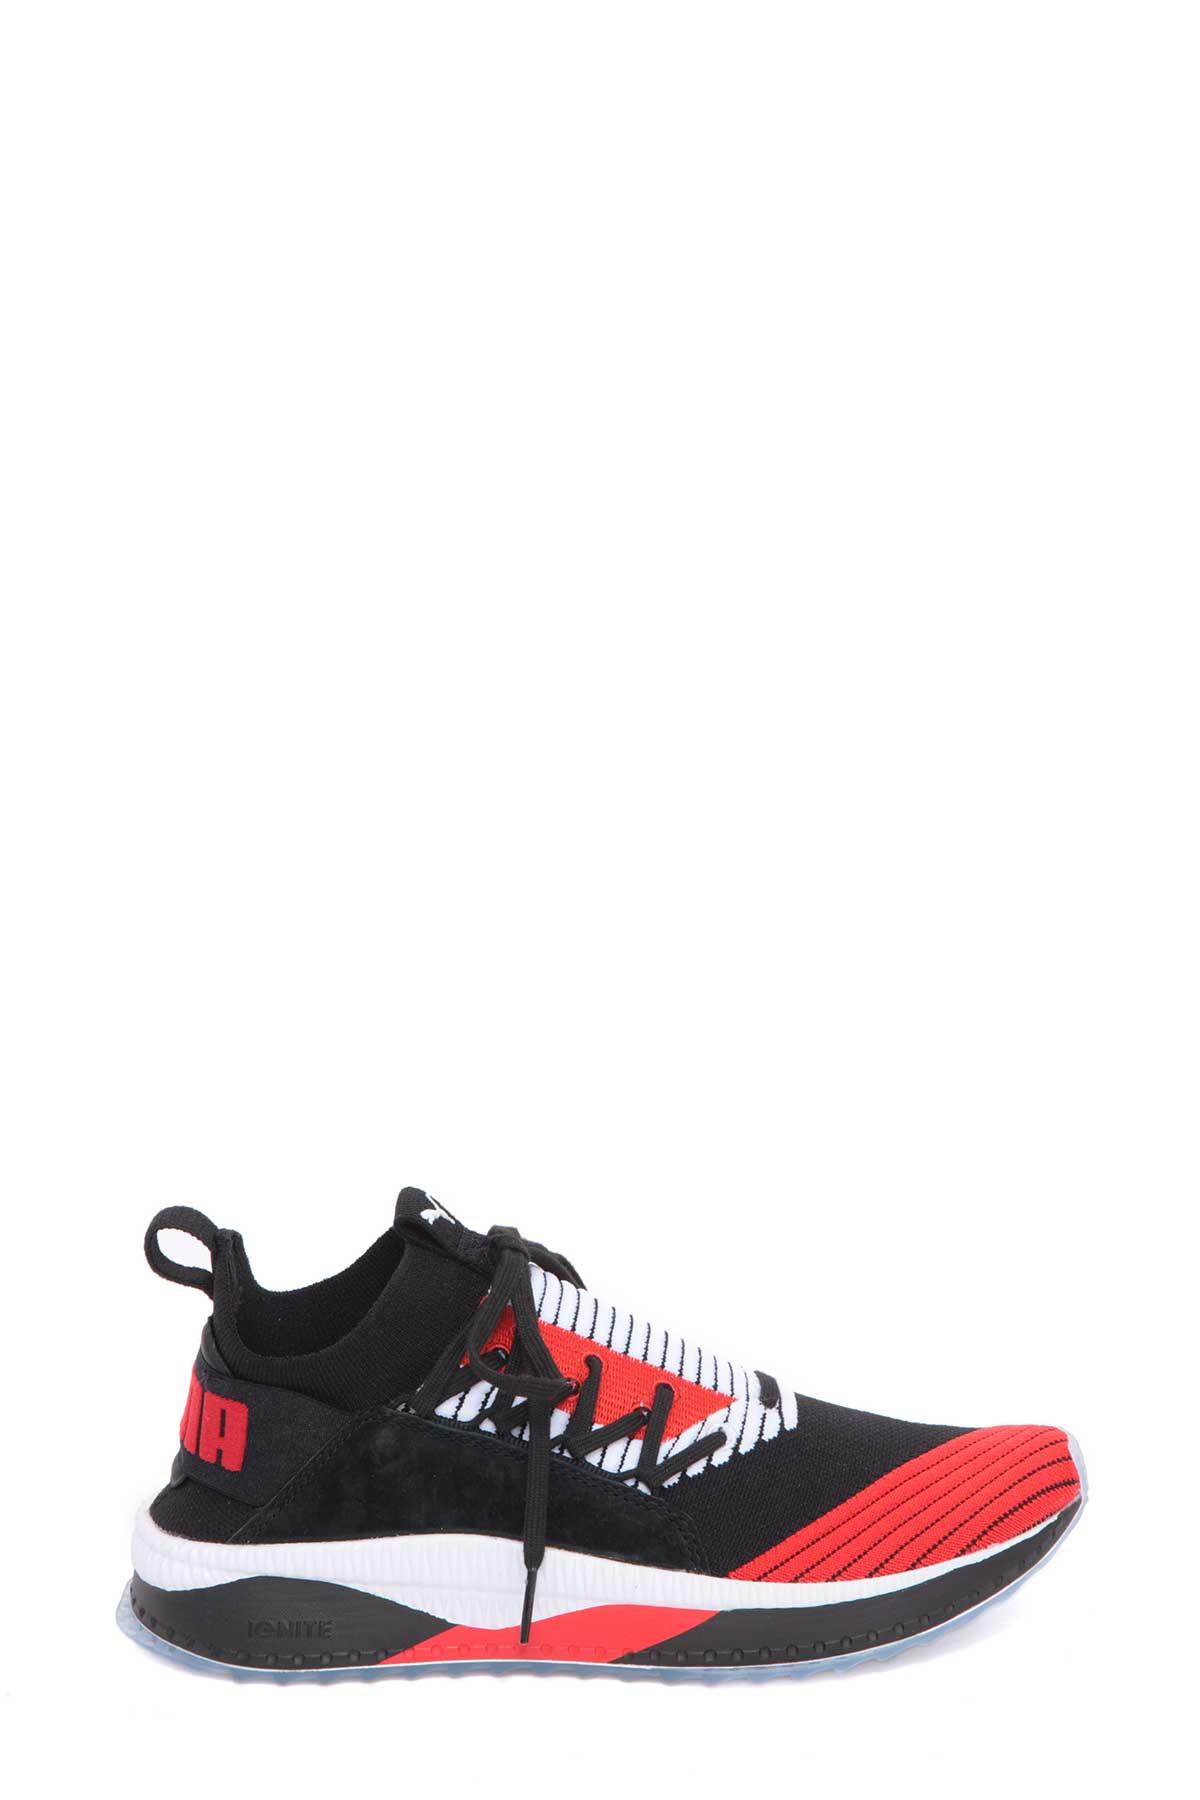 Puma Tsugi Jun Sneaker In Nero-rosso | ModeSens